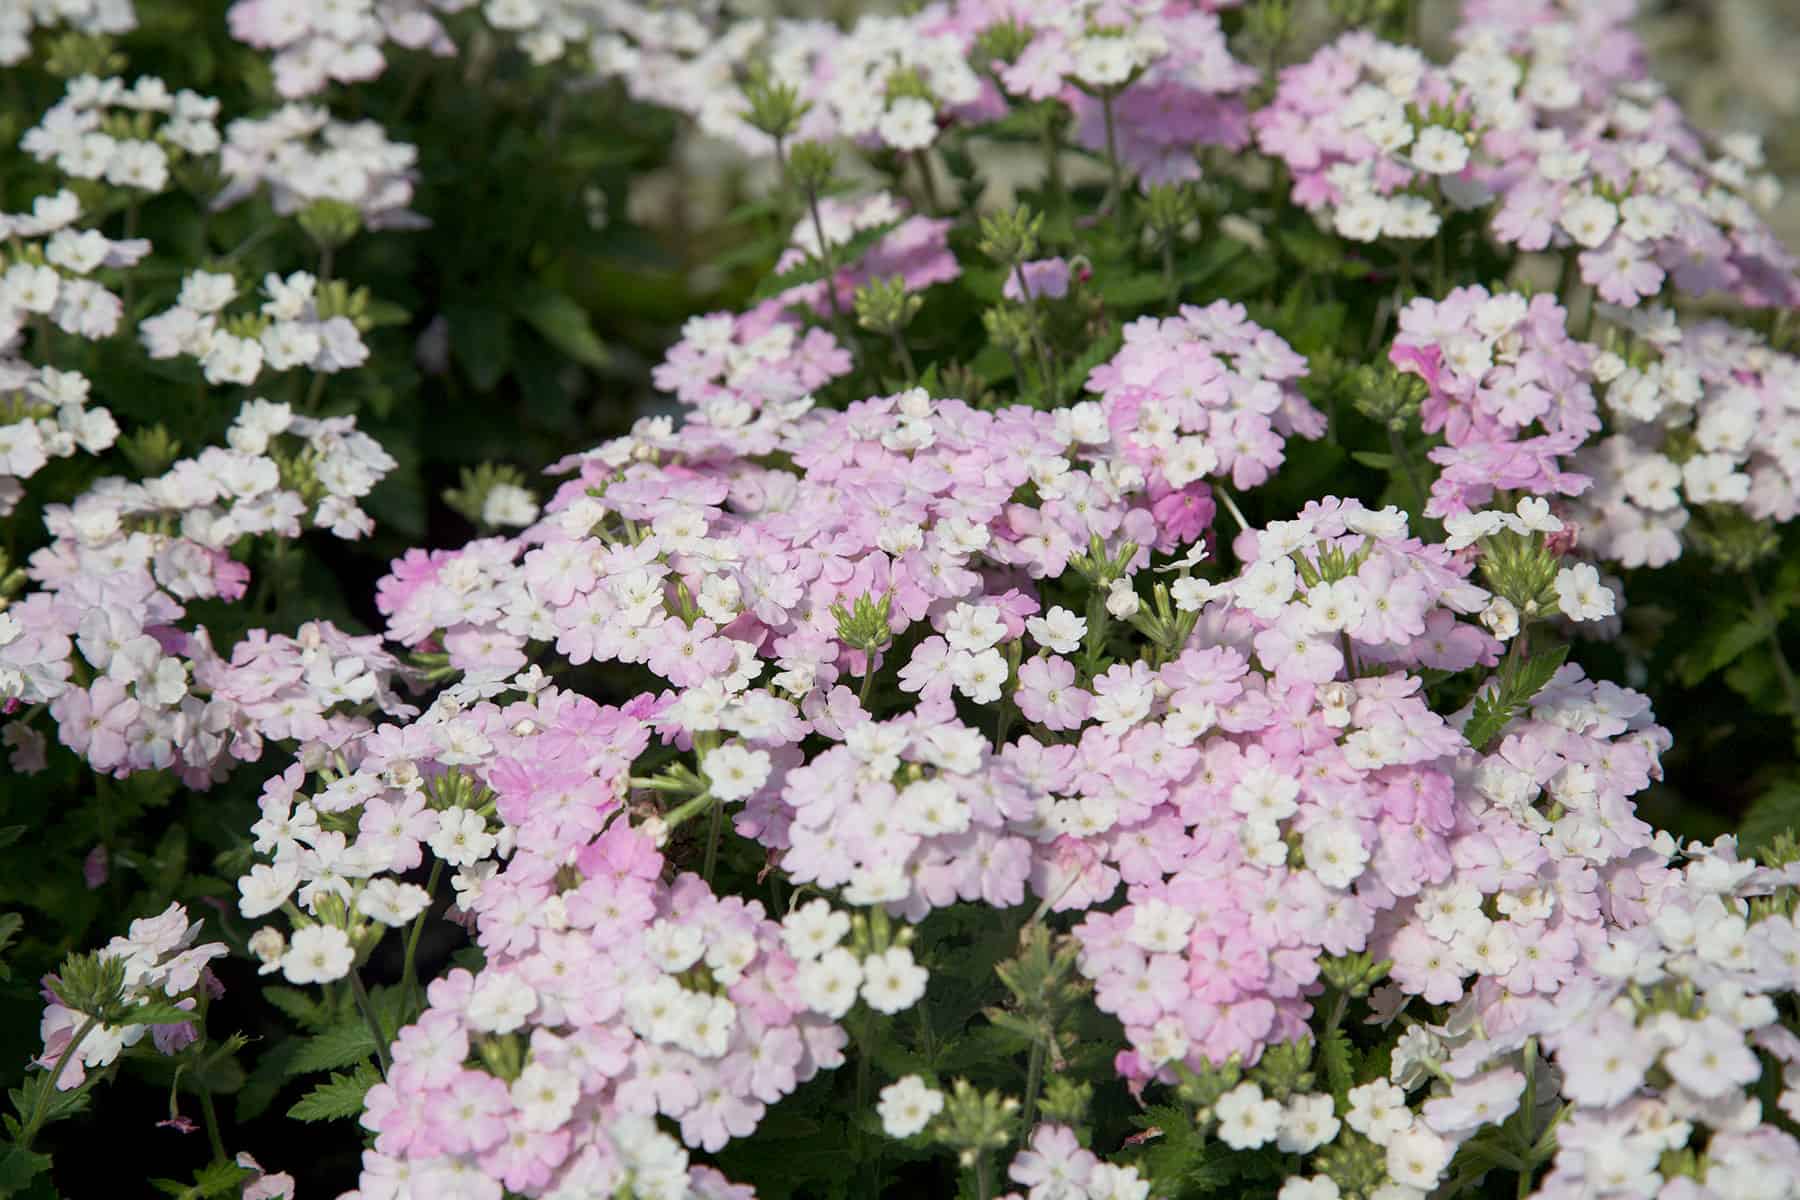 白脸红马鞭草的腮红粉色到白色花朵形成紧包的颜色上面深绿色,低矮植物